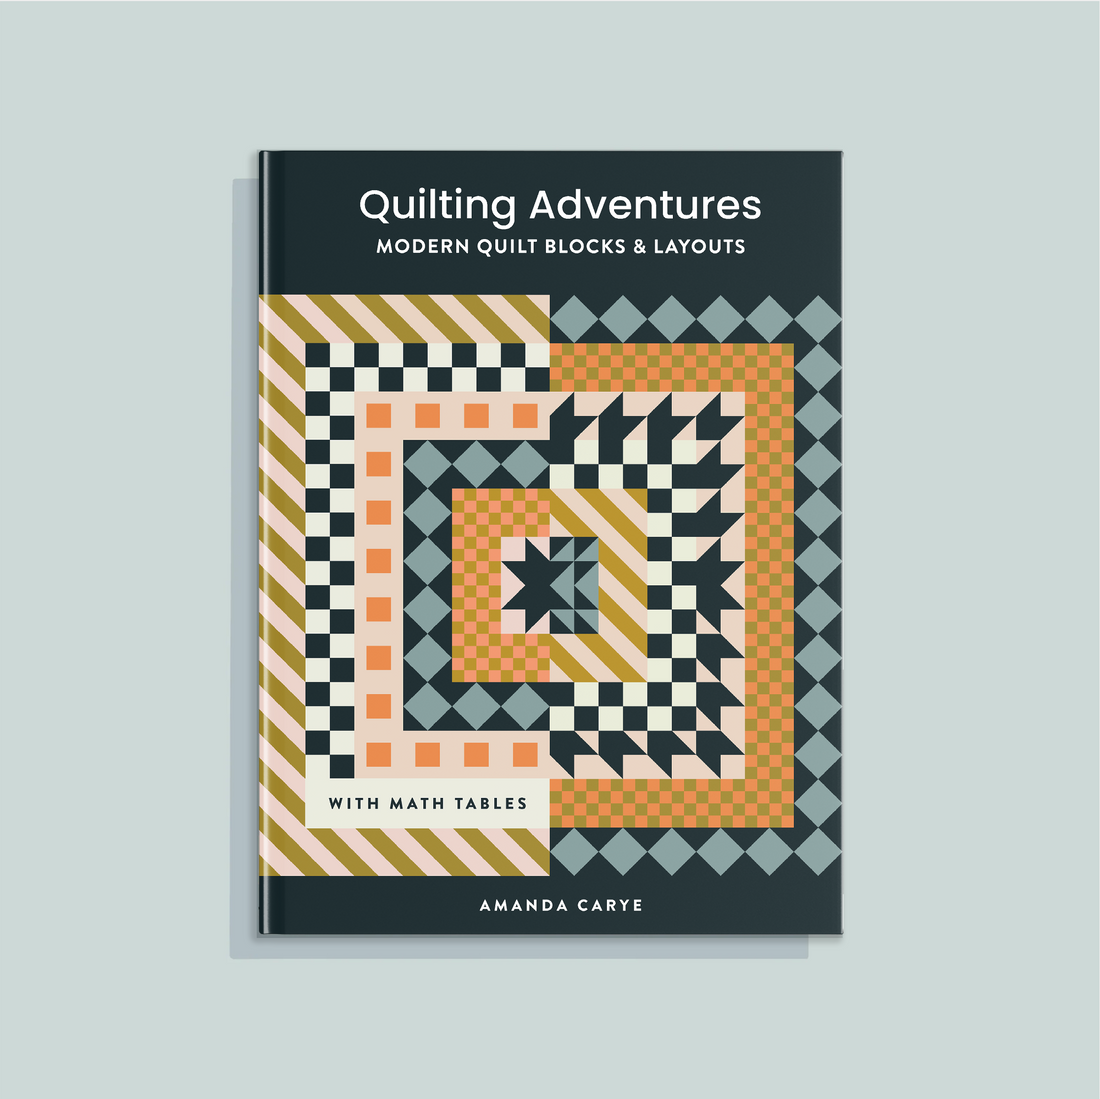 Quilting Adventures by Amanda Craye